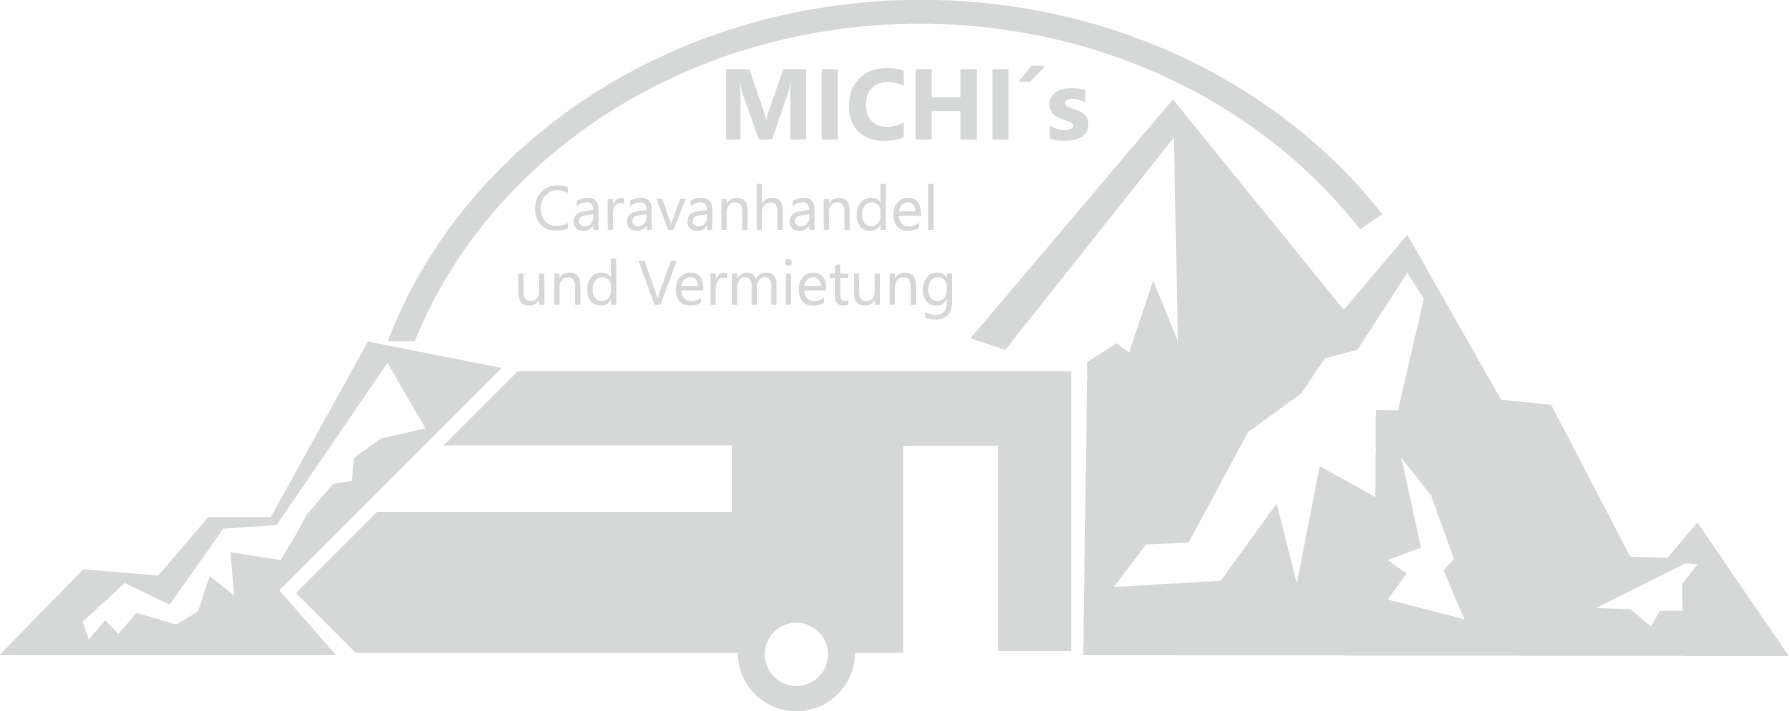 Michis Caravanhandel und Vermietung